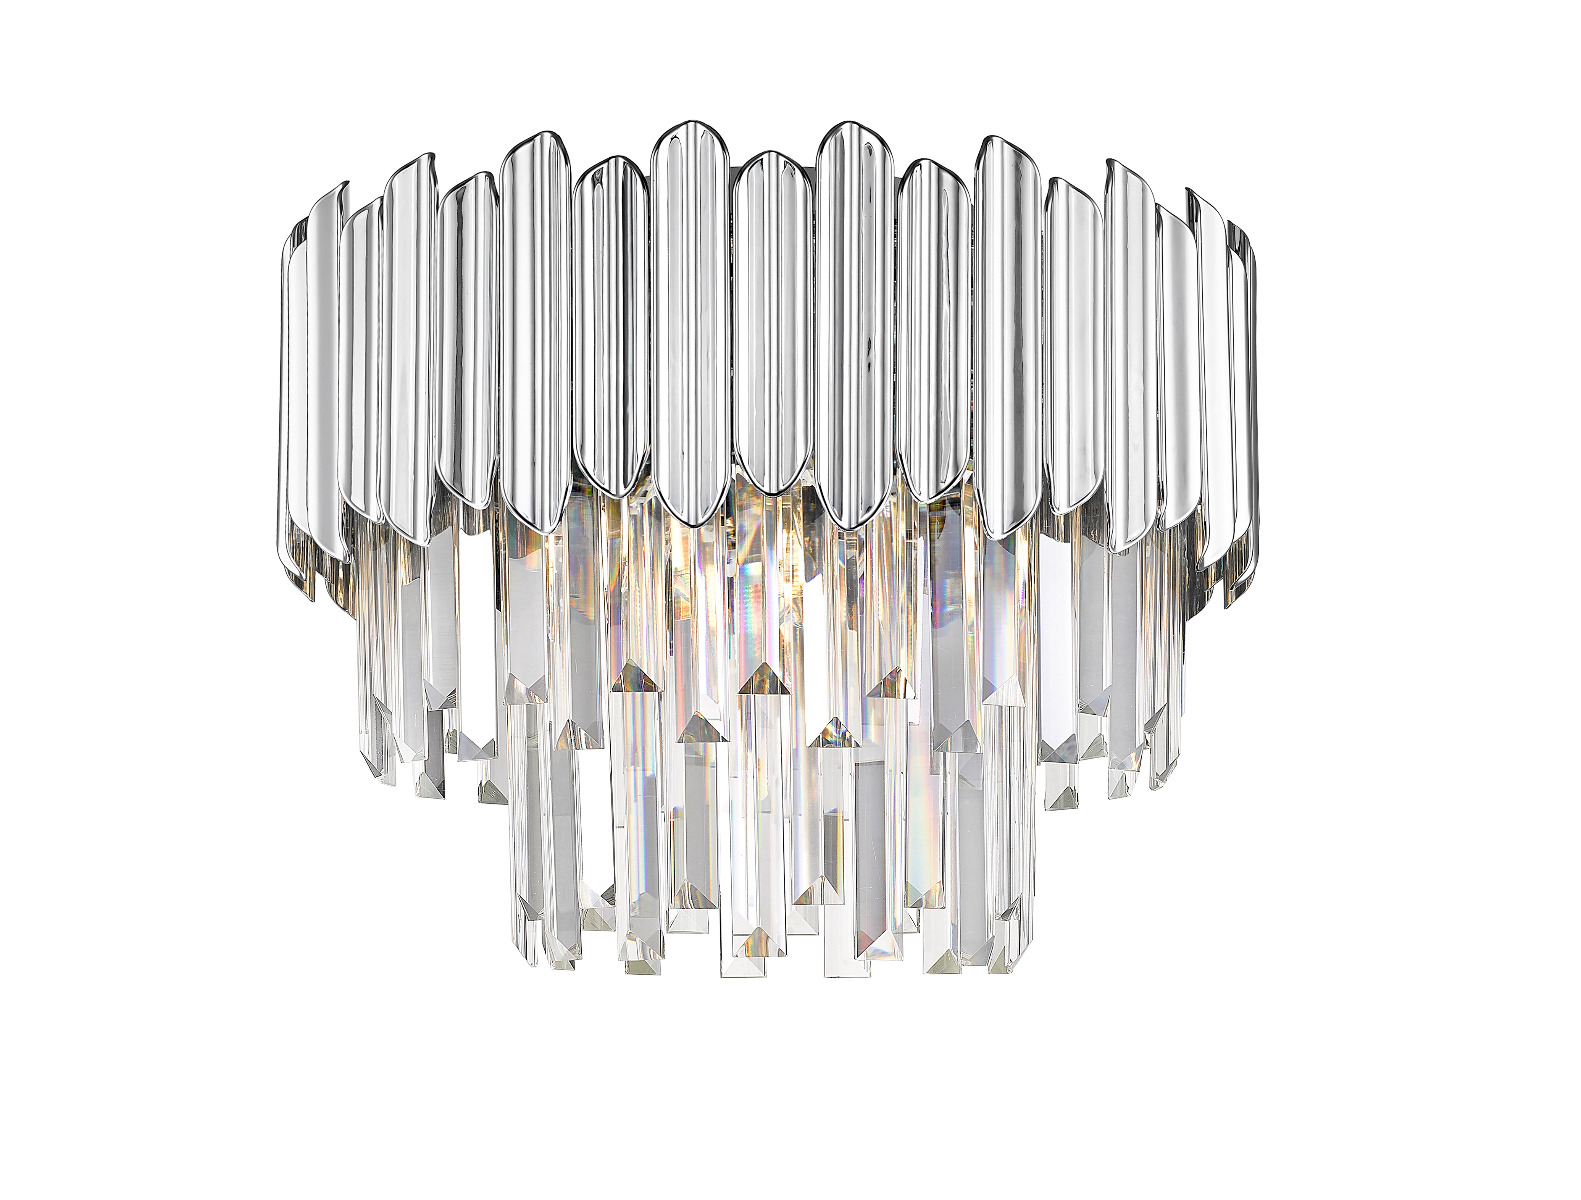 Gladius lampa plafon kryształowy Ø 41cm 5 płom. chrom C0535-05B-F4AC Zuma Line